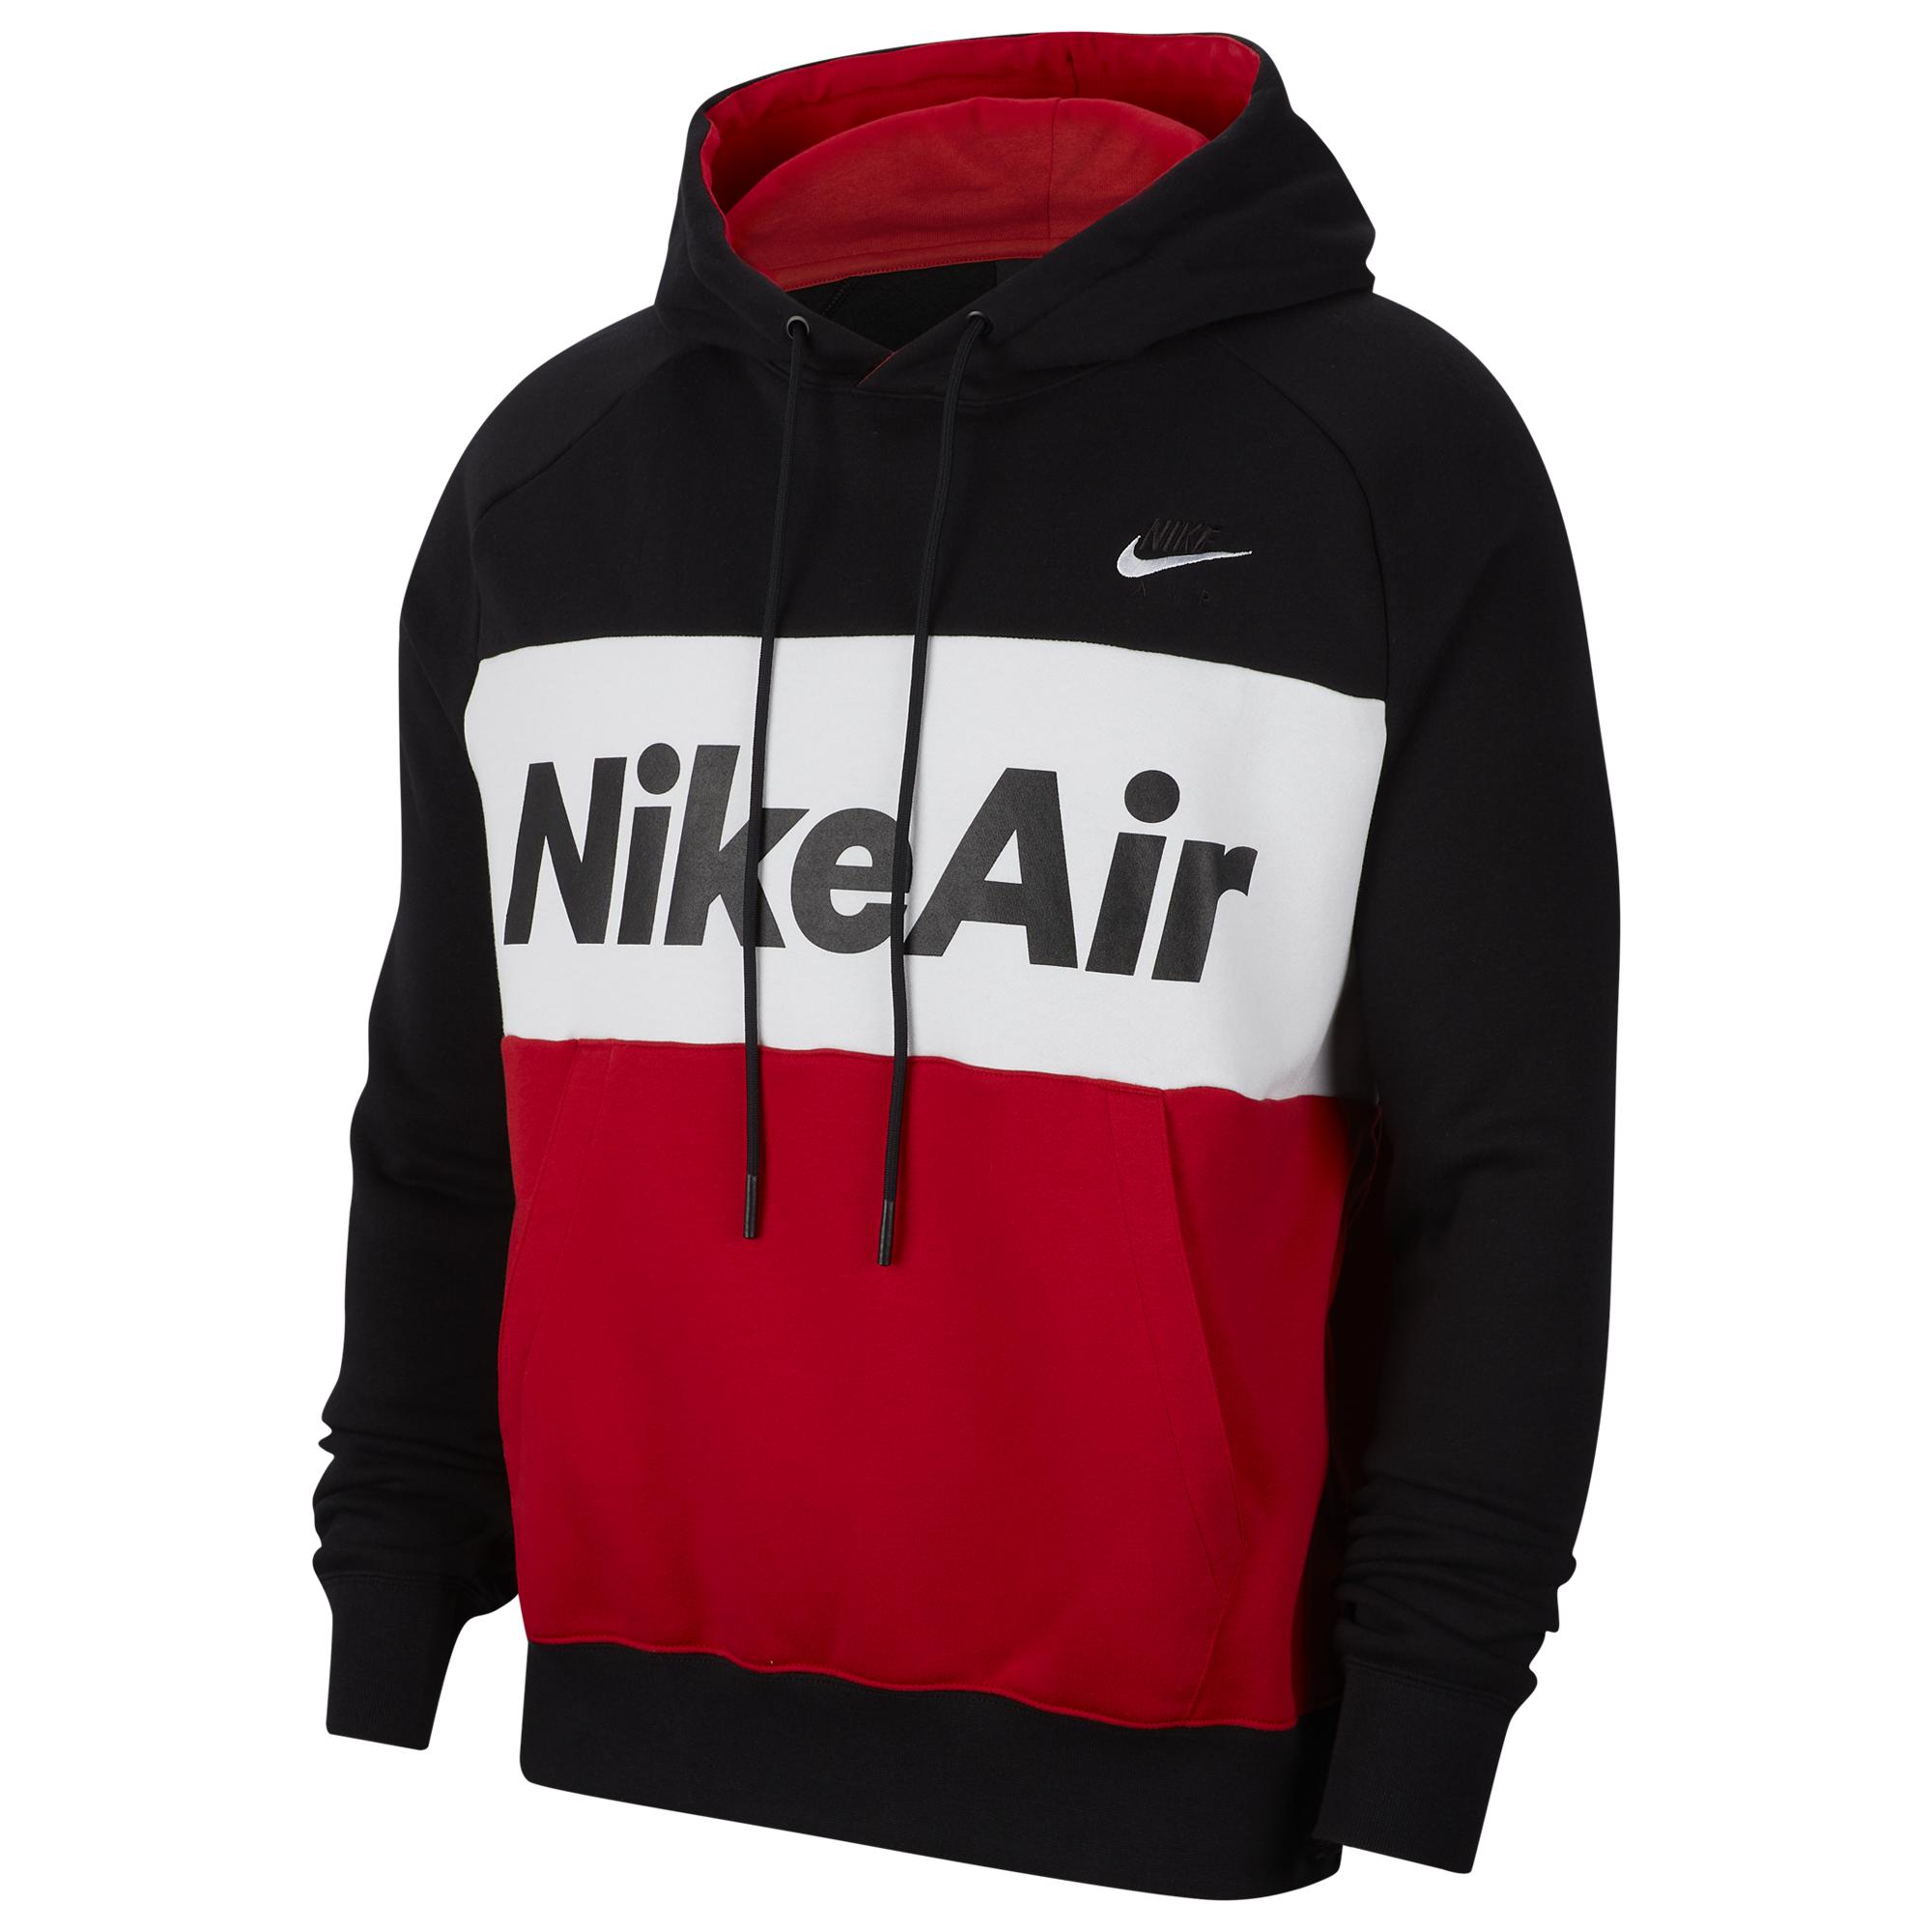  Nike Air Fleece Hoodie  in Black White University Red Red 